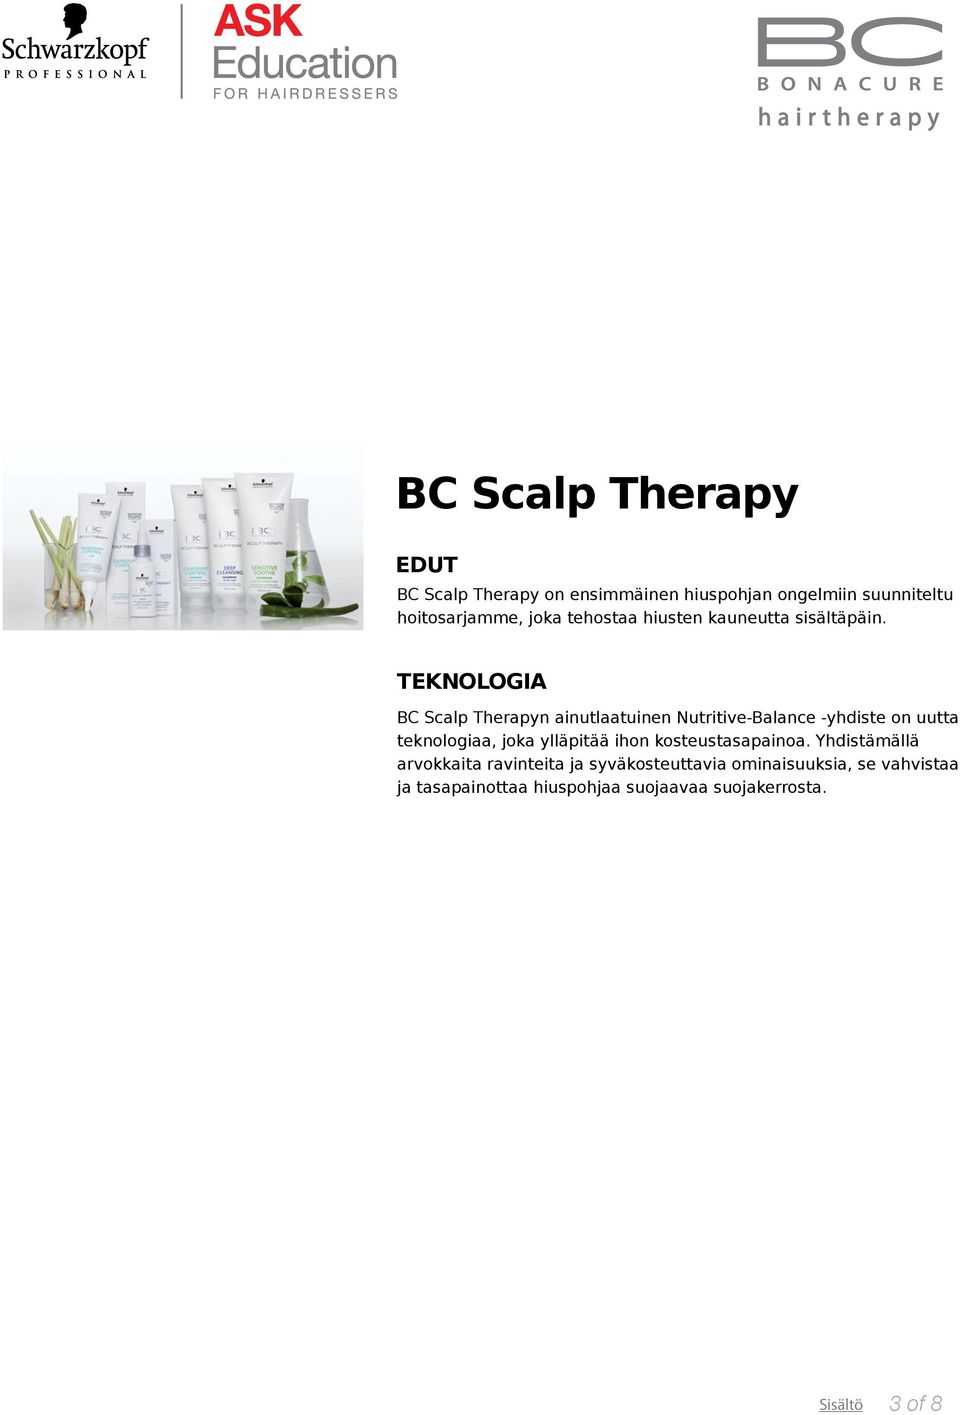 TEKNOLOGIA BC Scalp Therapyn ainutlaatuinen Nutritive-Balance -yhdiste on uutta teknologiaa, joka